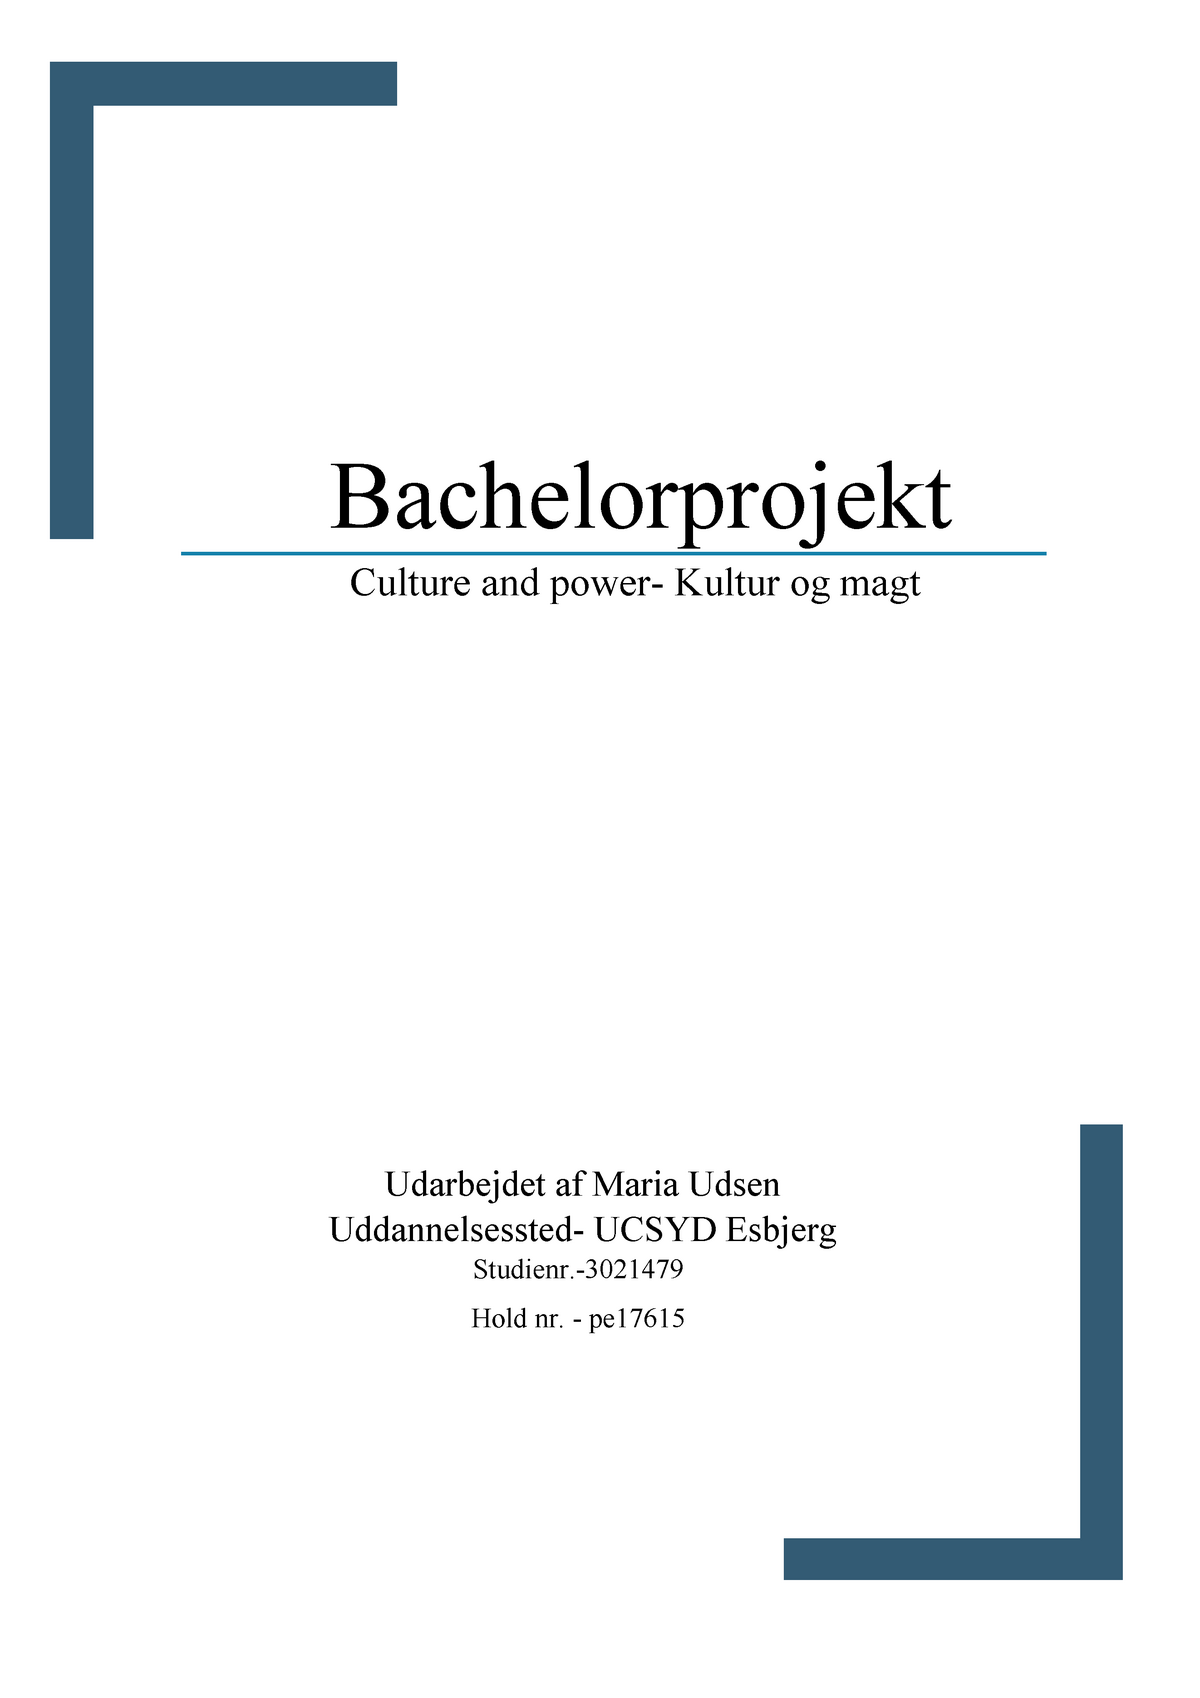 Bachelorprojekt- Kultur og magt - Bachelorprojekt power- Kultur og magt Udarbejdet af - Studocu